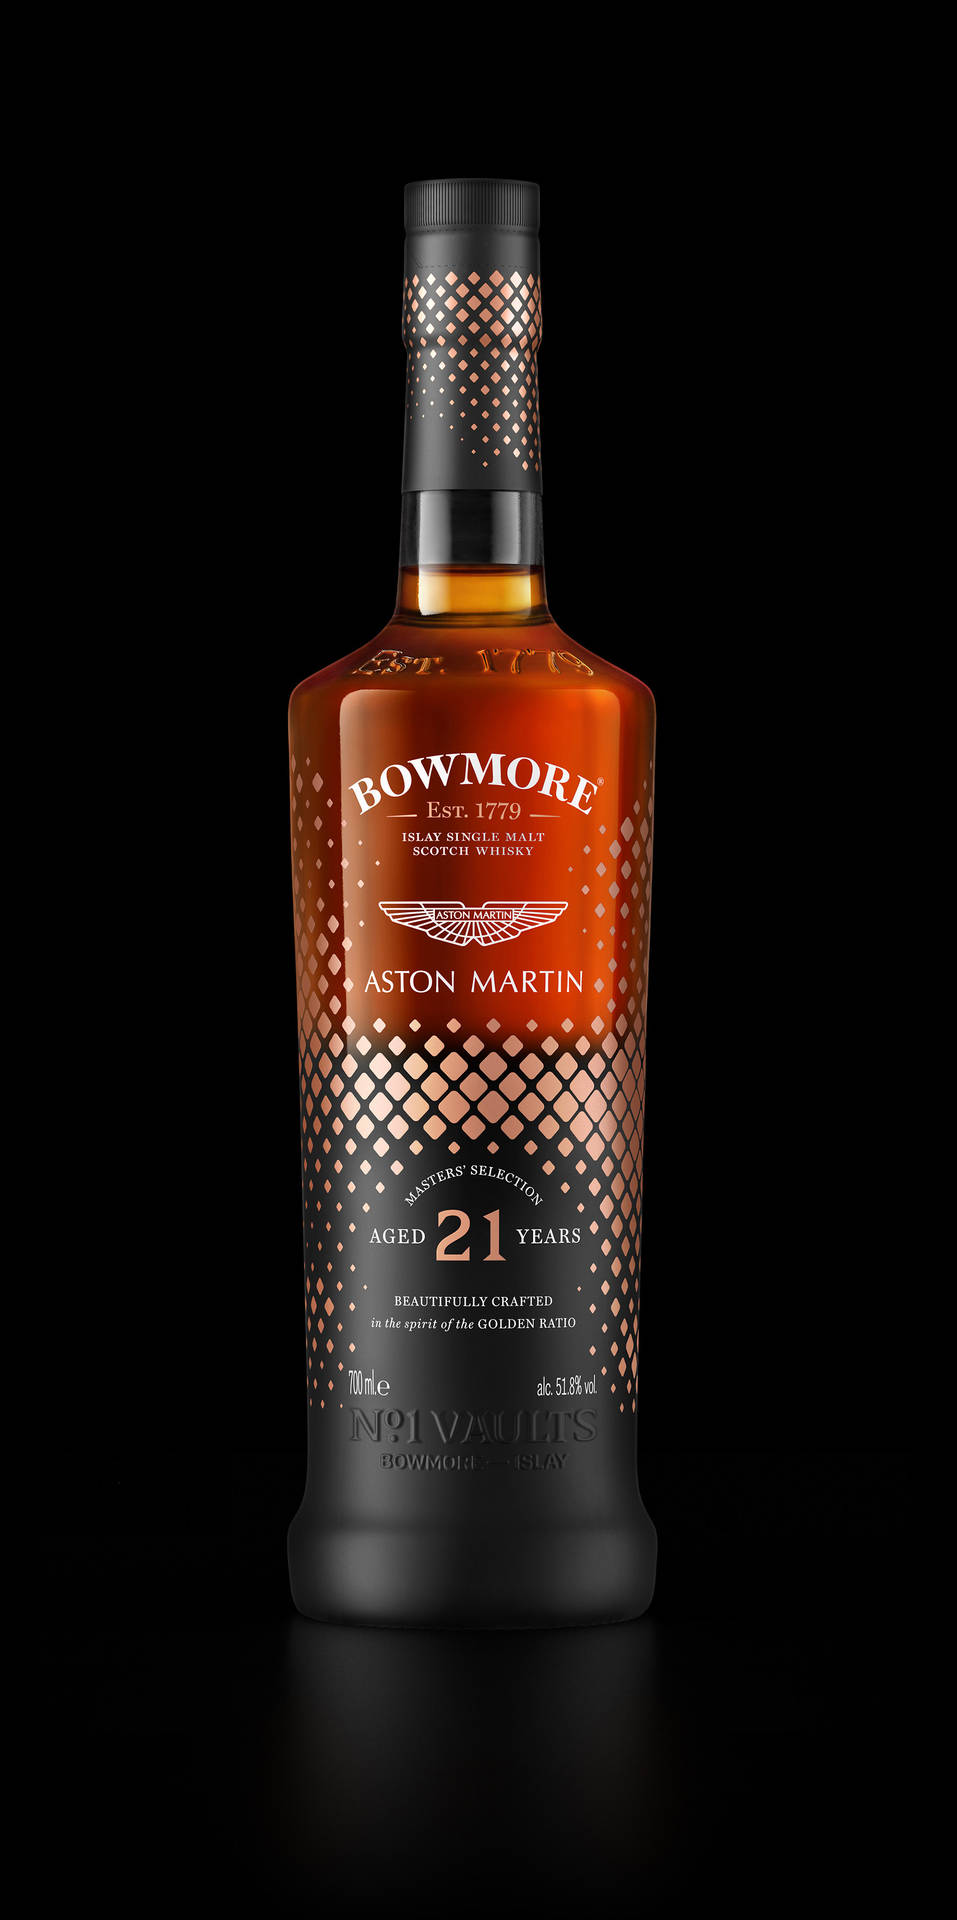 Bowmorewhisky De 21 Años. Fondo de pantalla